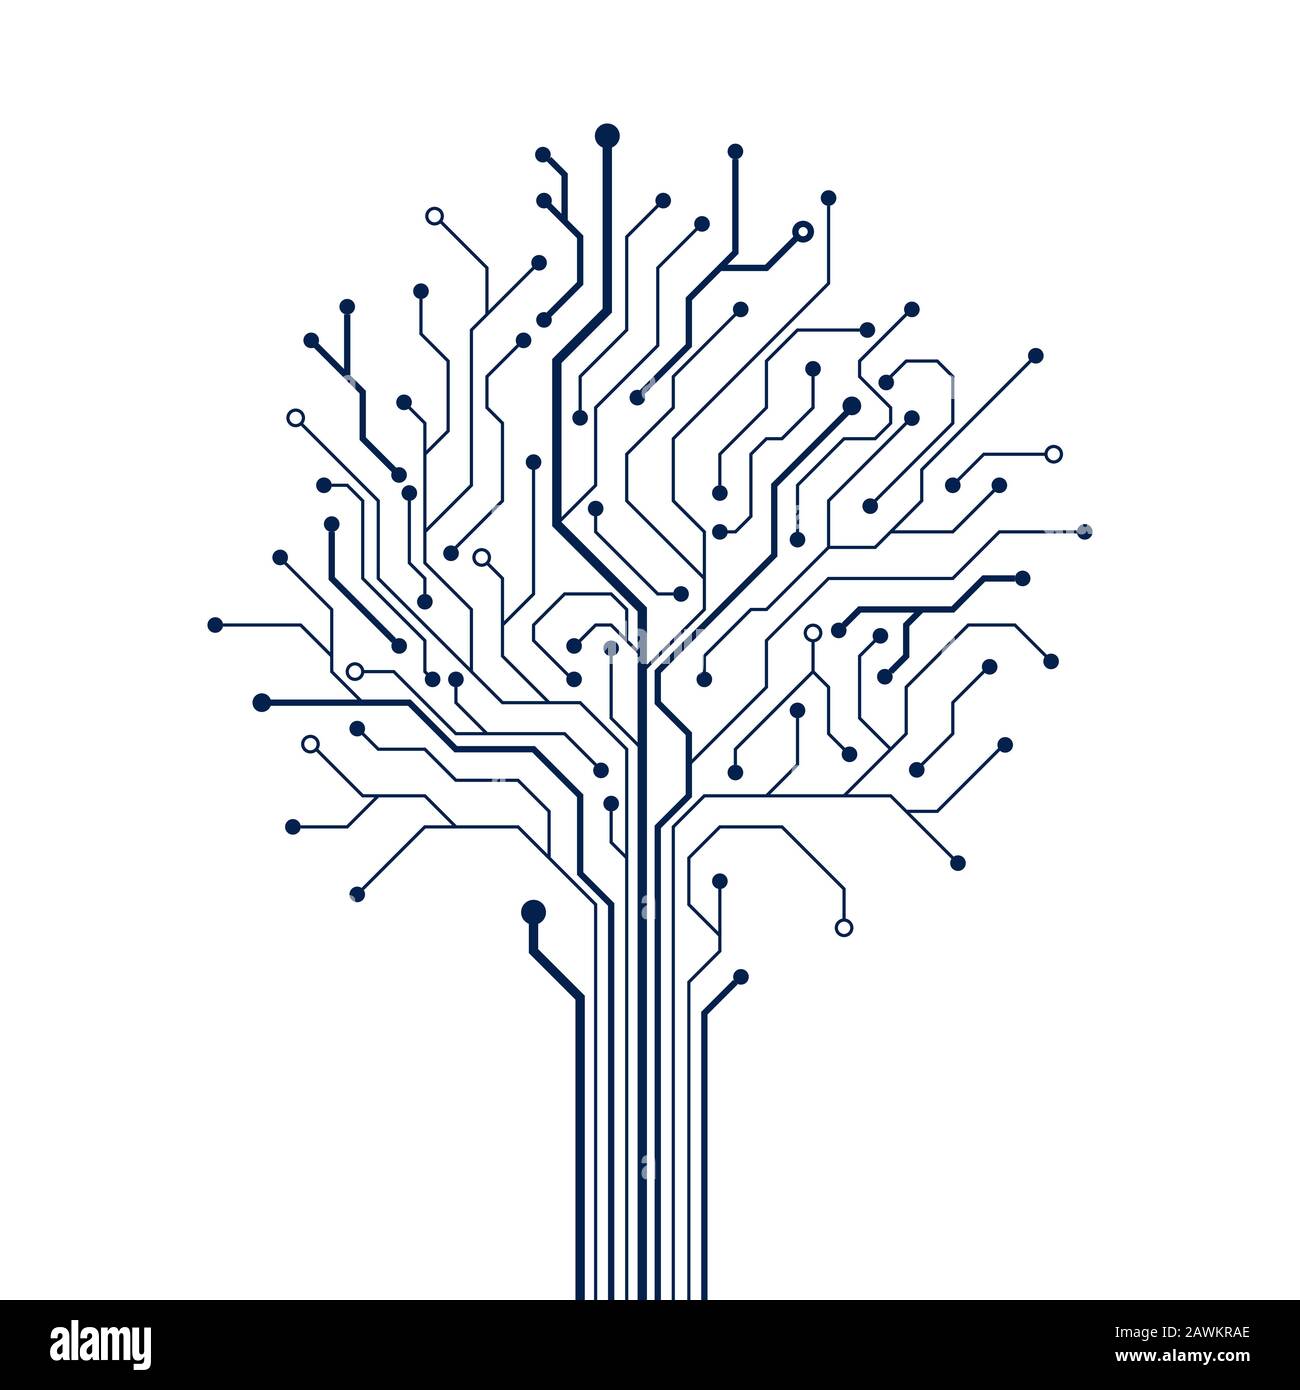 Kreisbaum auf weißem Hintergrund. Element des Technologiedesigns. Computertechnik Hardware-System. Vektor Stock Vektor